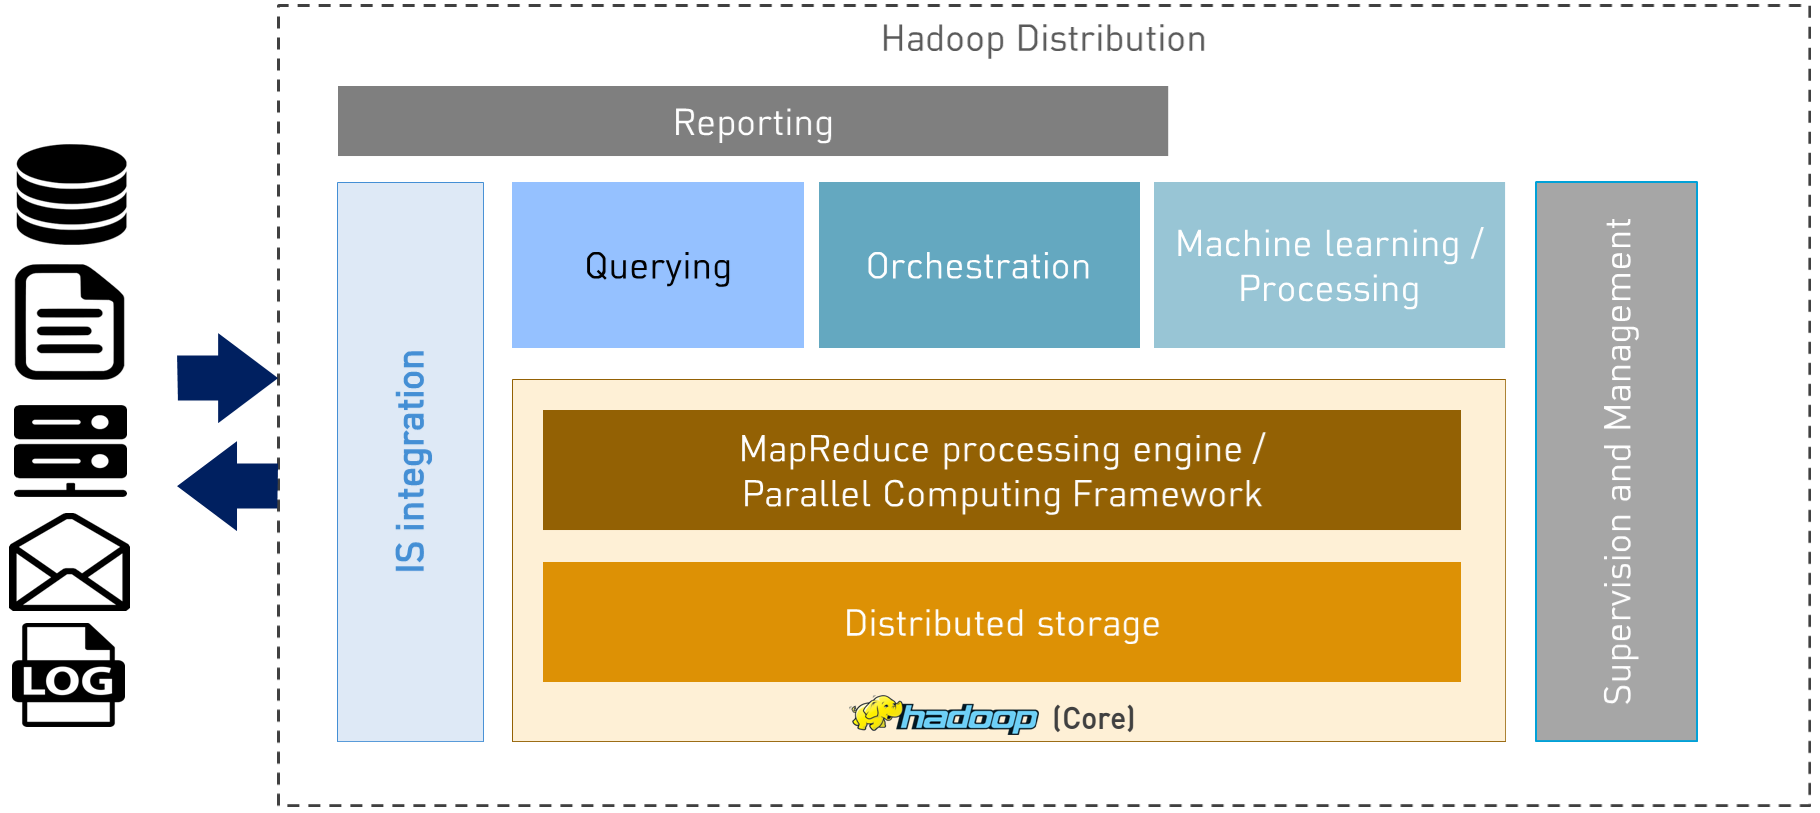 Hadoop Overview